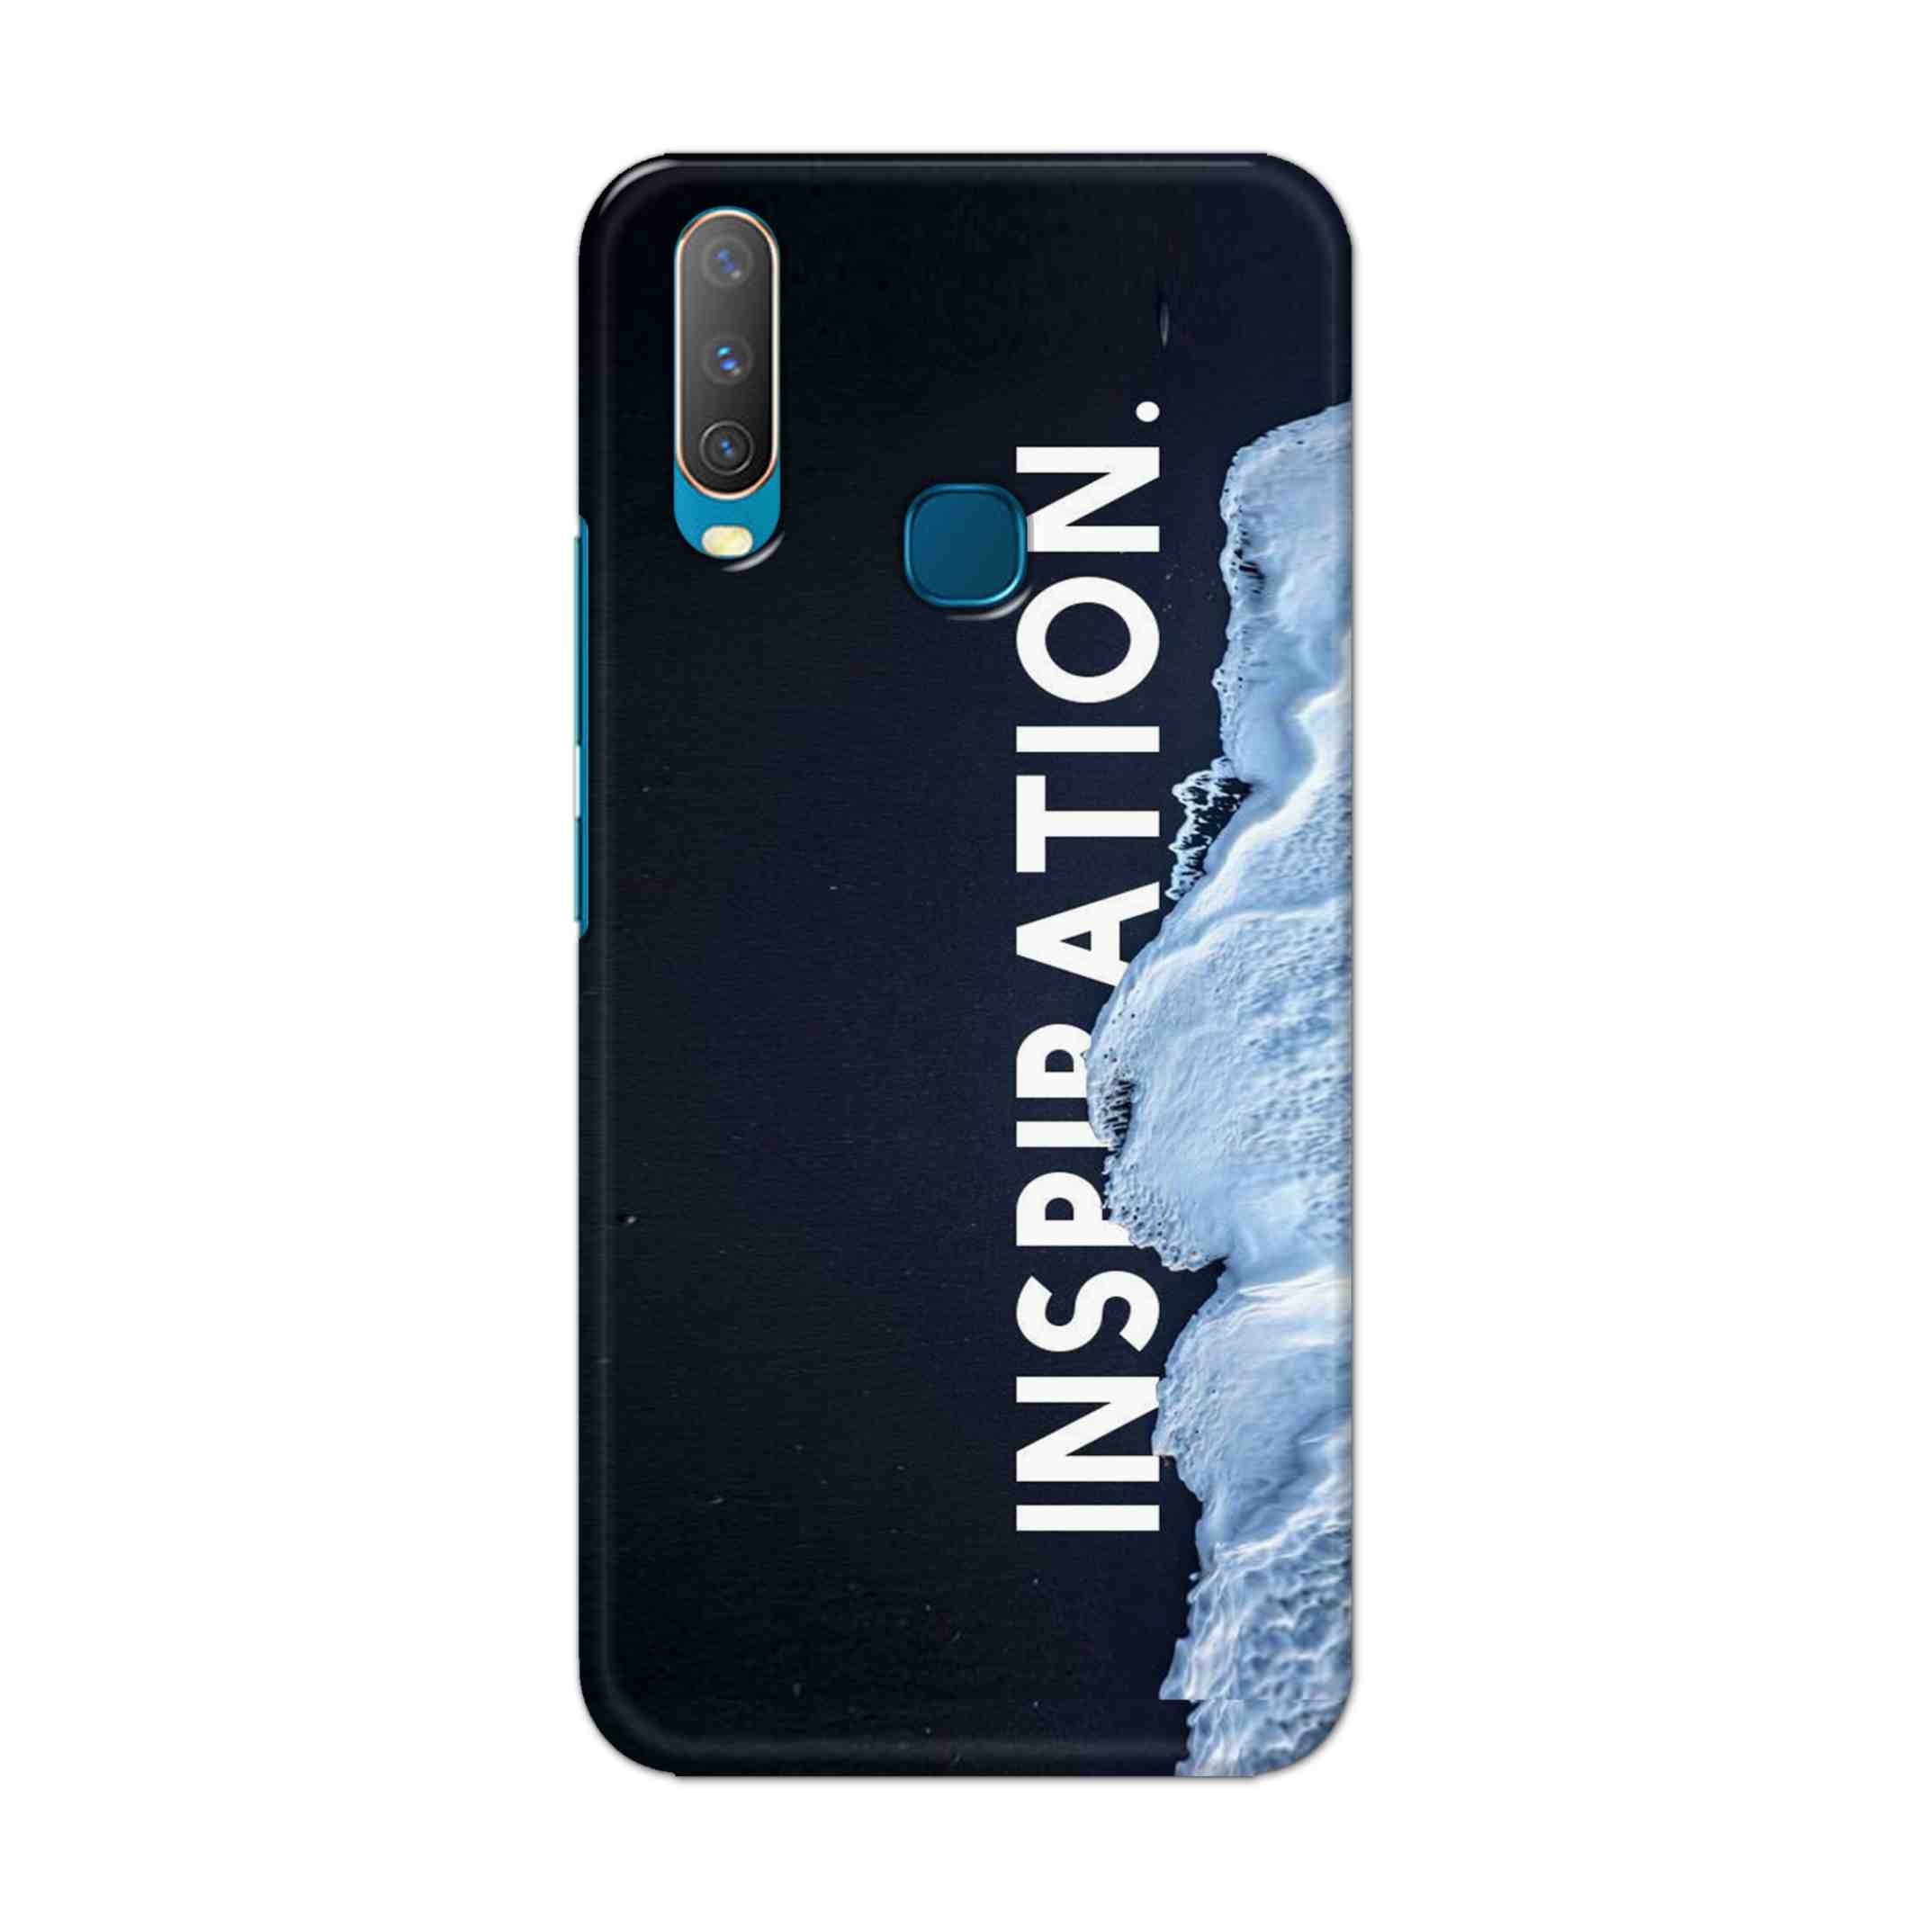 Buy Inspiration Hard Back Mobile Phone Case Cover For Vivo Y17 / U10 Online